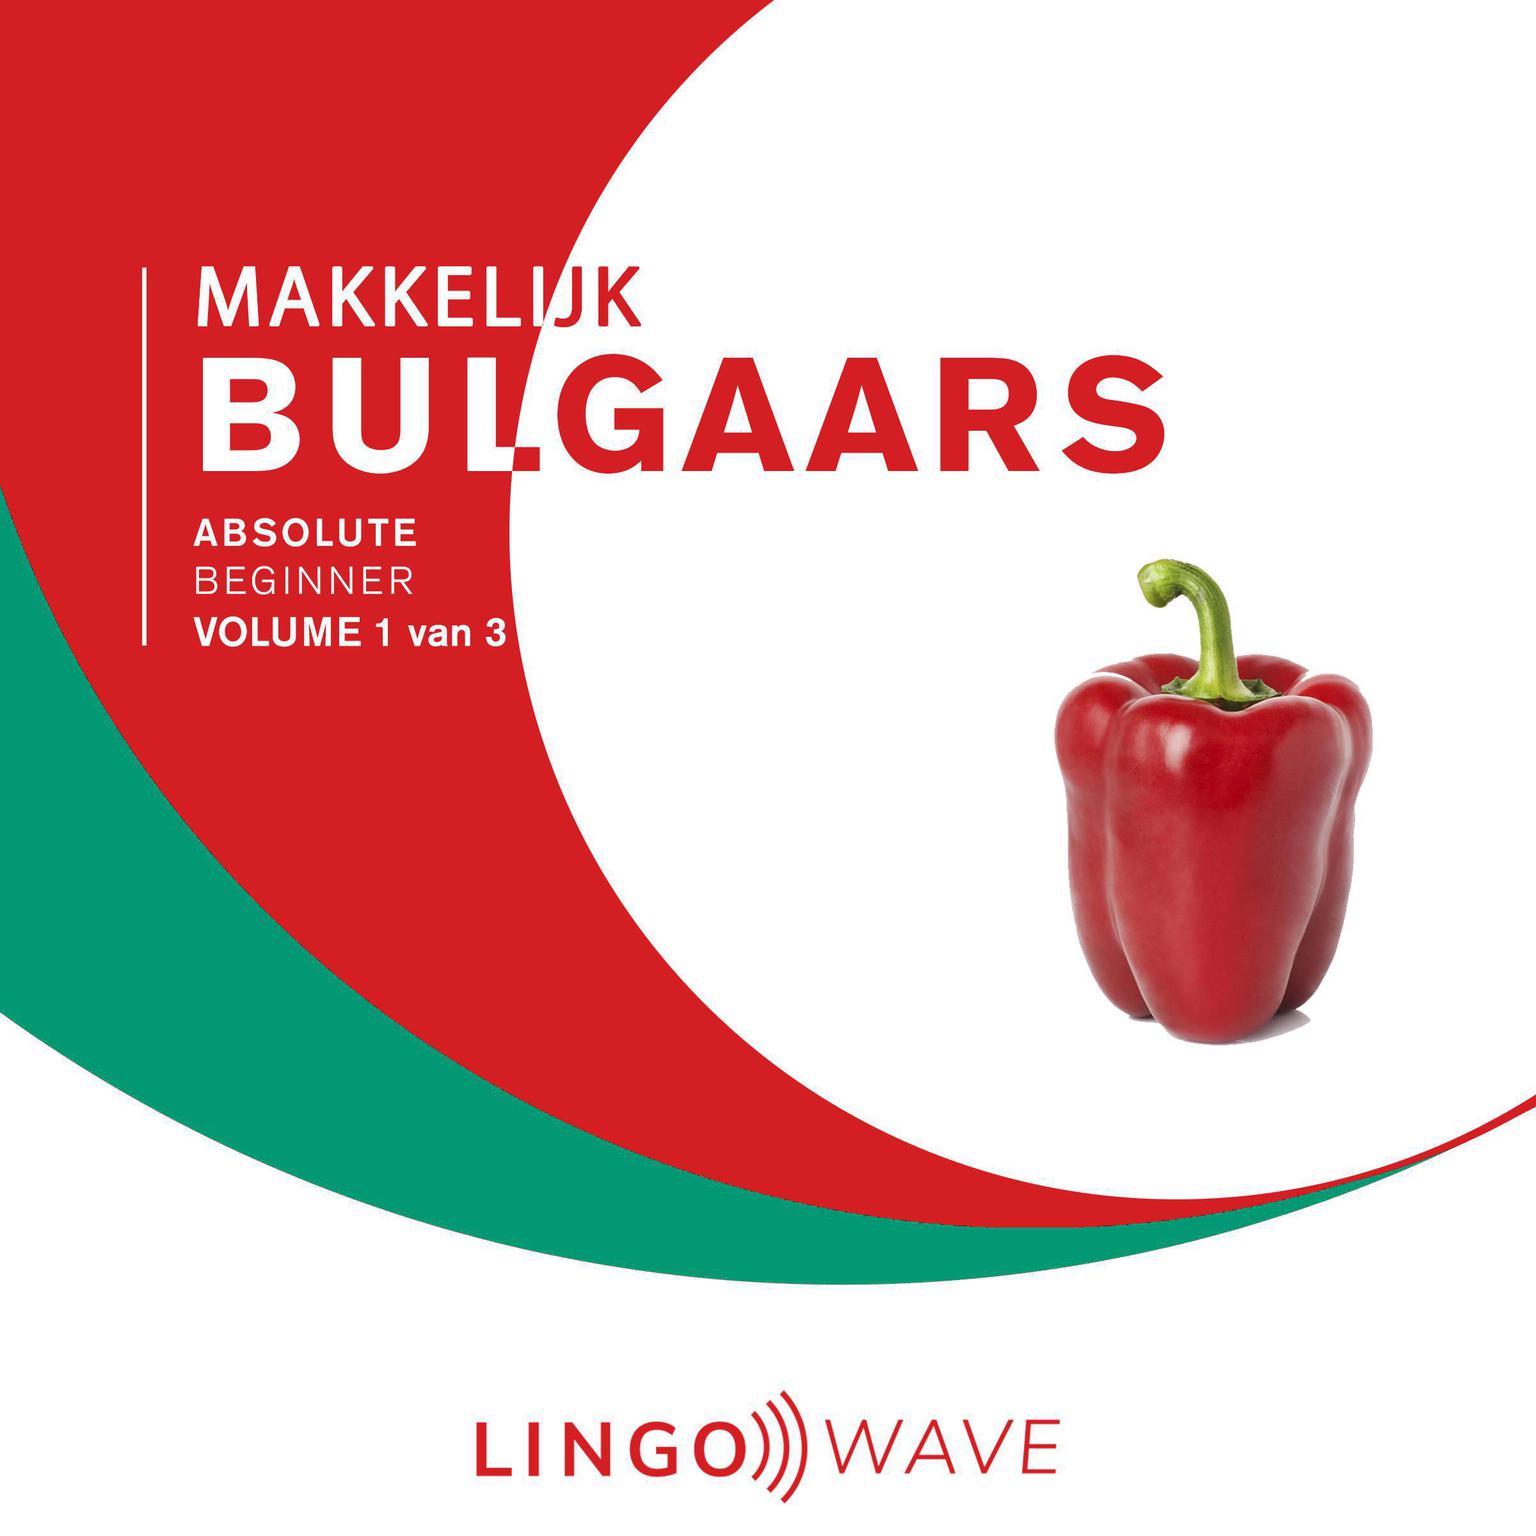 Makkelijk Bulgaars - Absolute beginner - Volume 1 van 3 Audiobook, by Lingo Wave